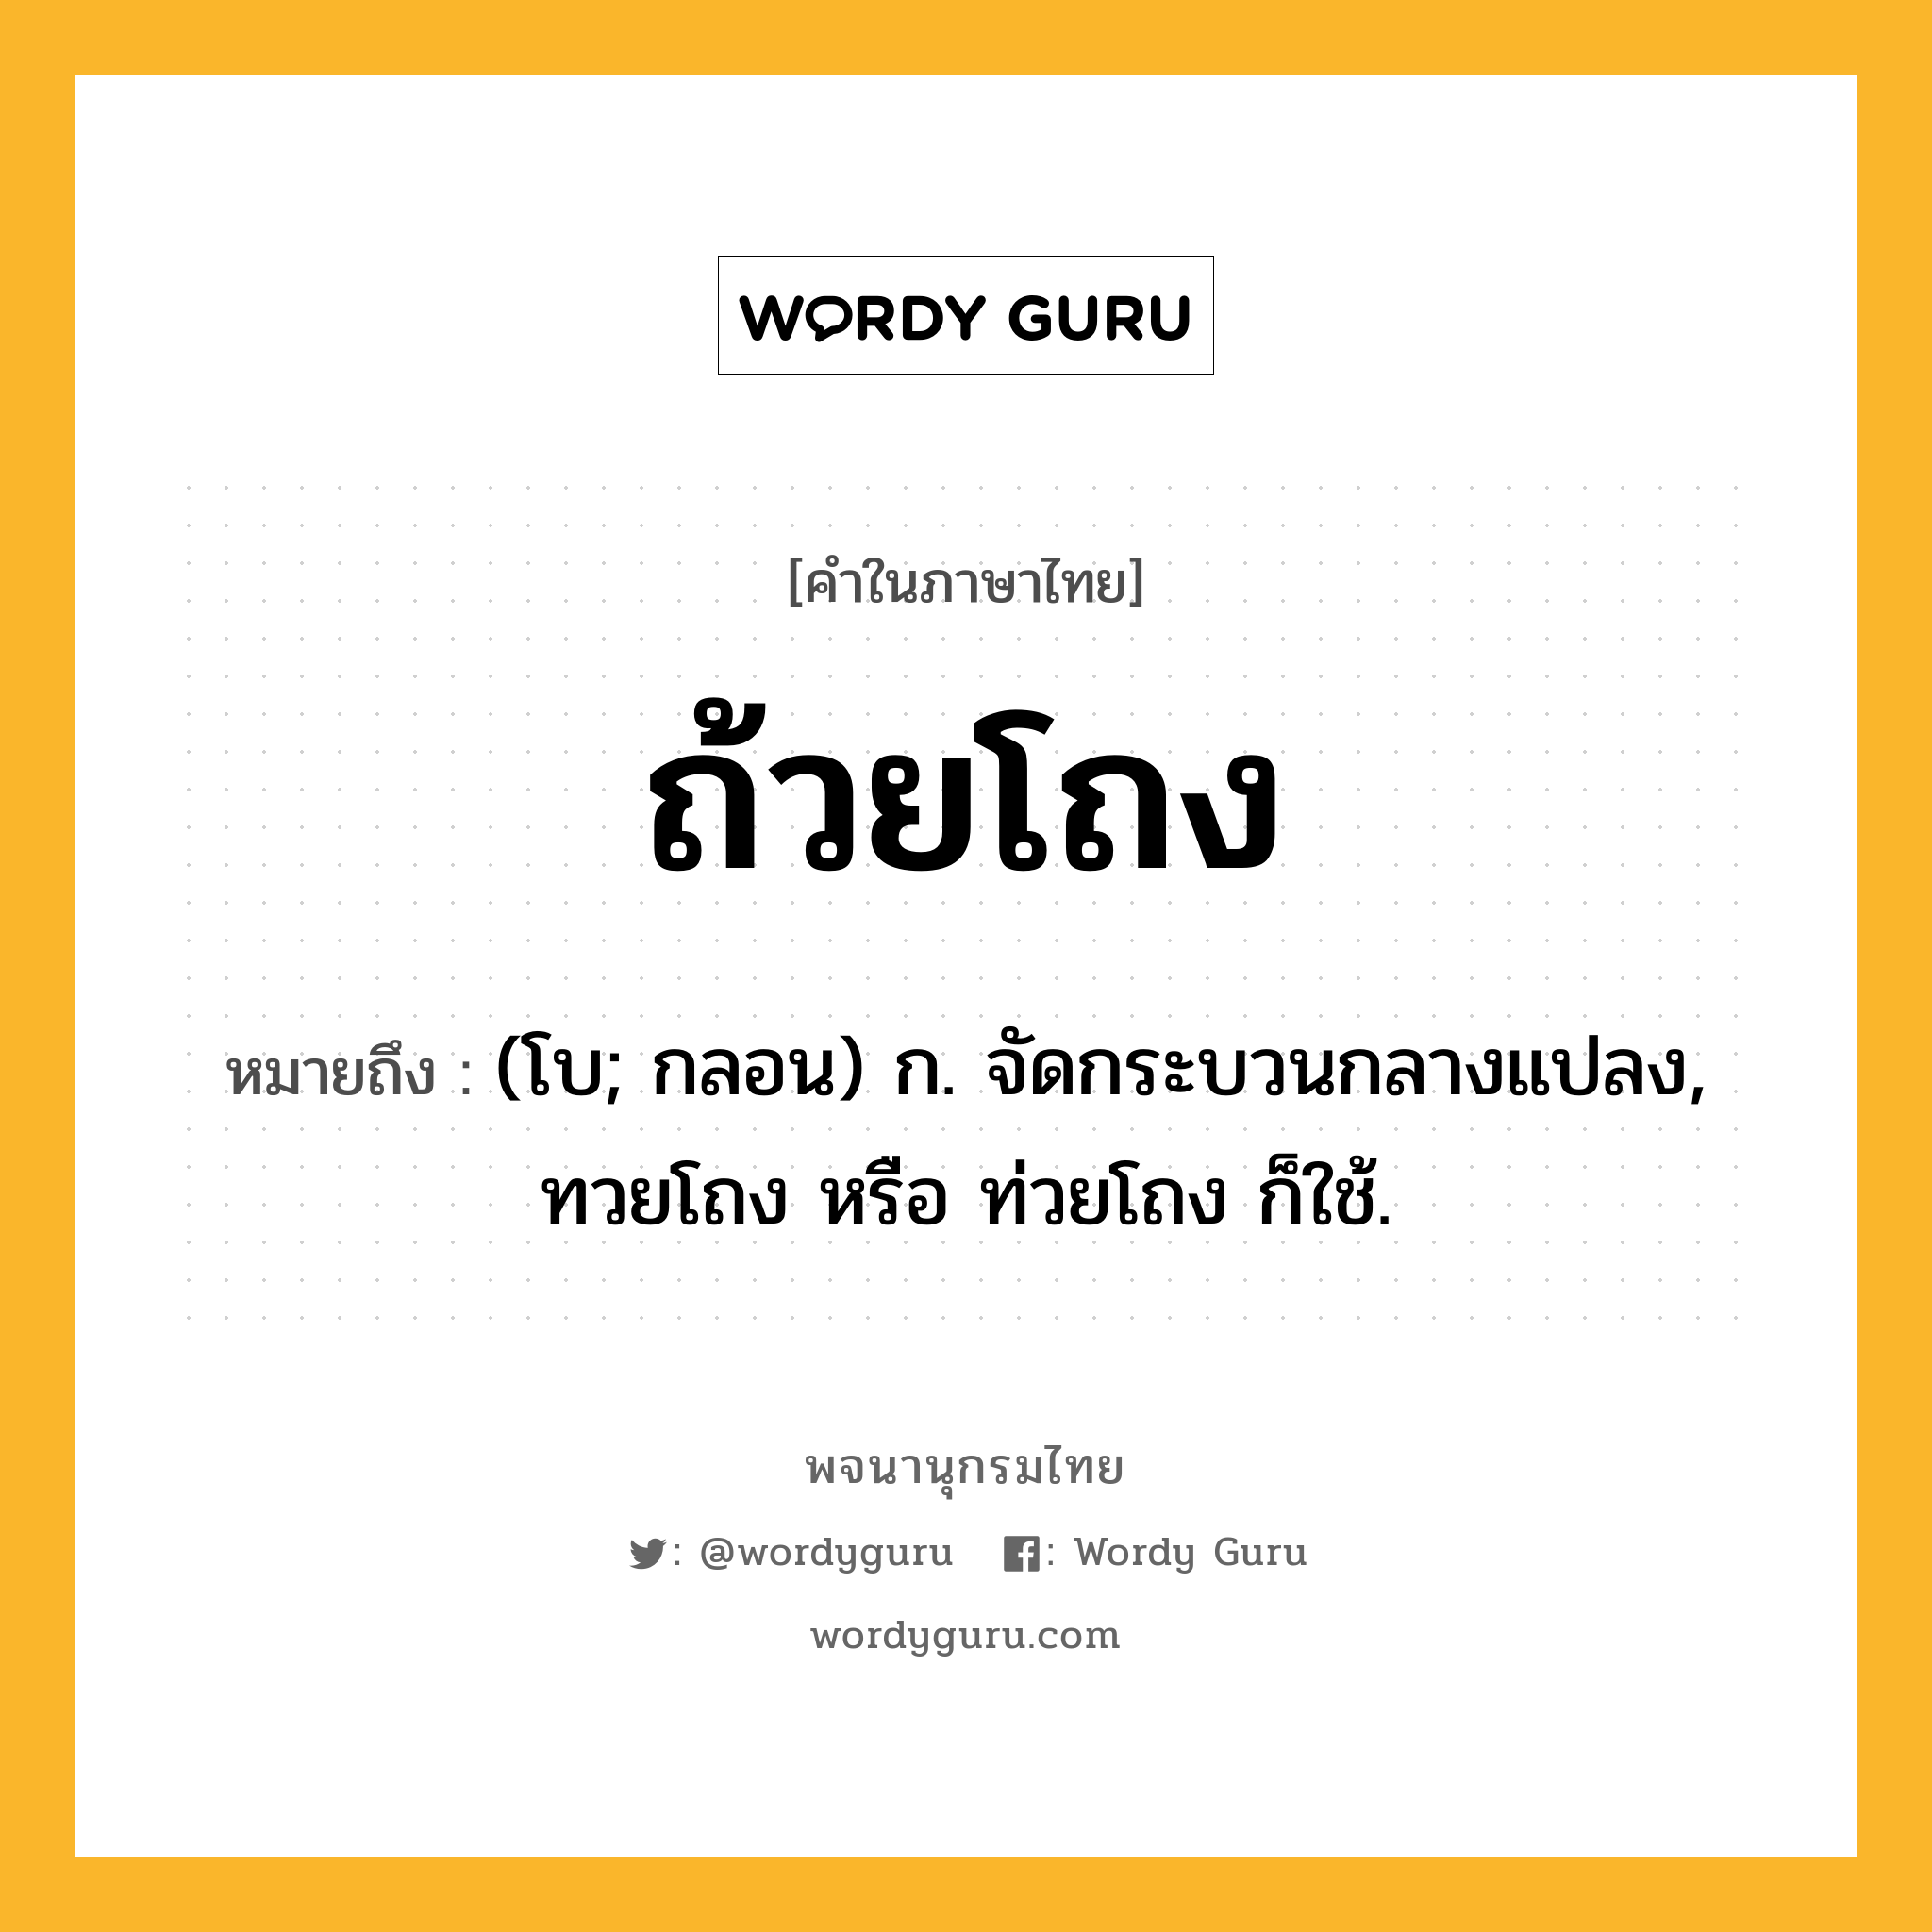 ถ้วยโถง ความหมาย หมายถึงอะไร?, คำในภาษาไทย ถ้วยโถง หมายถึง (โบ; กลอน) ก. จัดกระบวนกลางแปลง, ทวยโถง หรือ ท่วยโถง ก็ใช้.